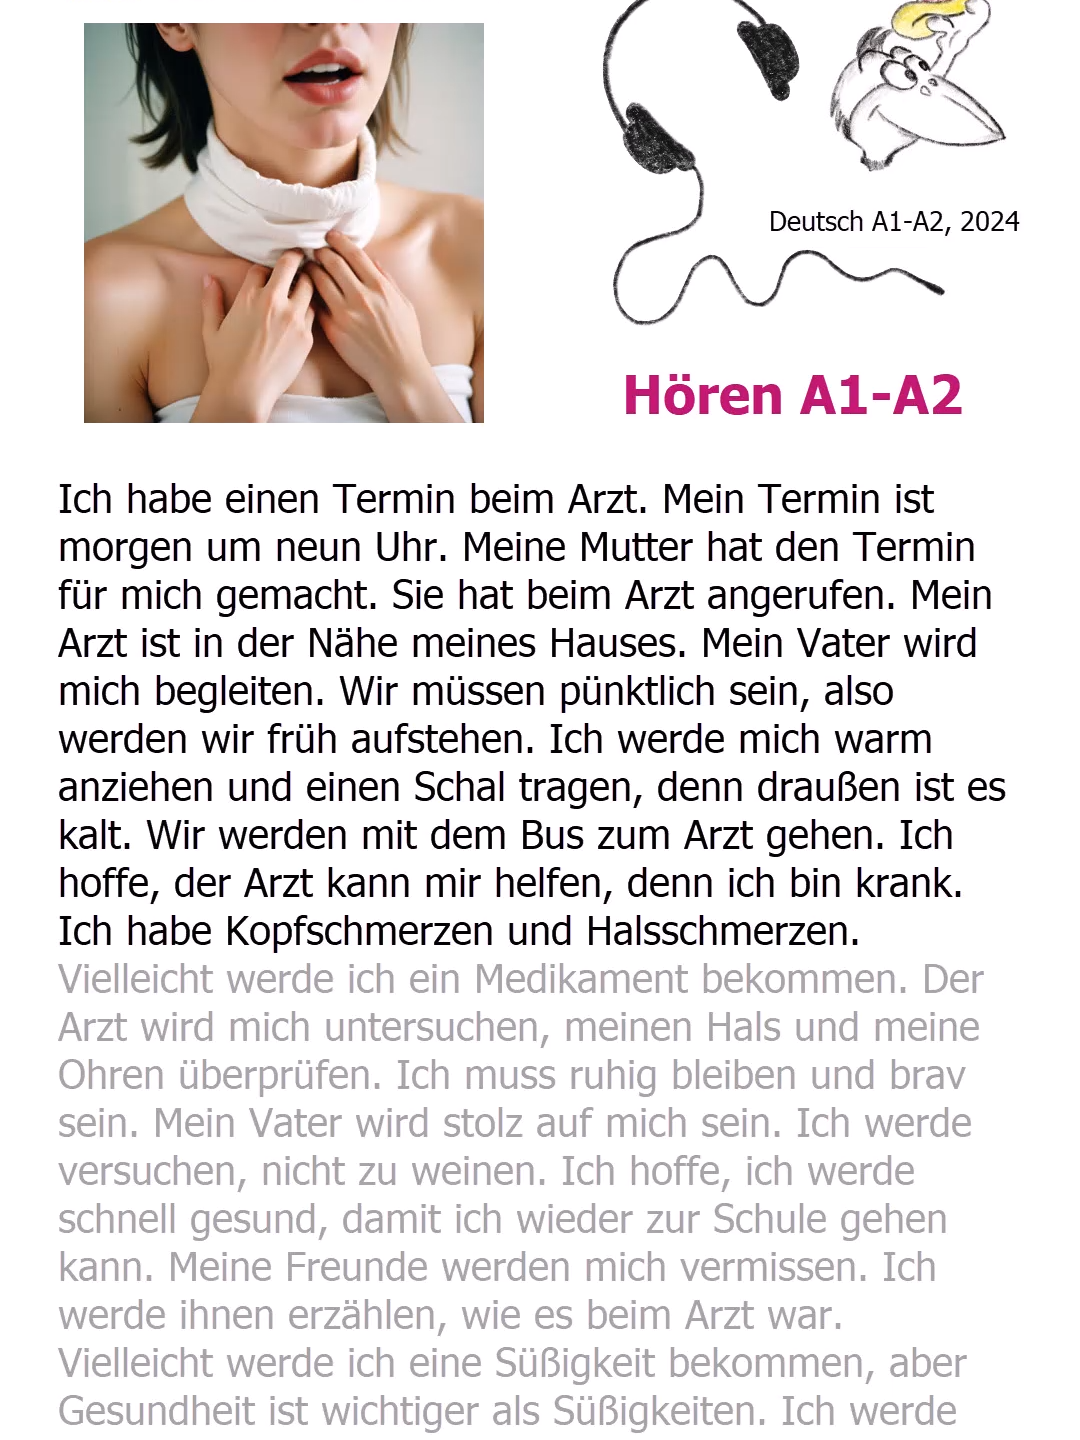 Hören (14.05.2024) - Arzttermin #deutscha1 #hören #arzttermin #lerndeutsch